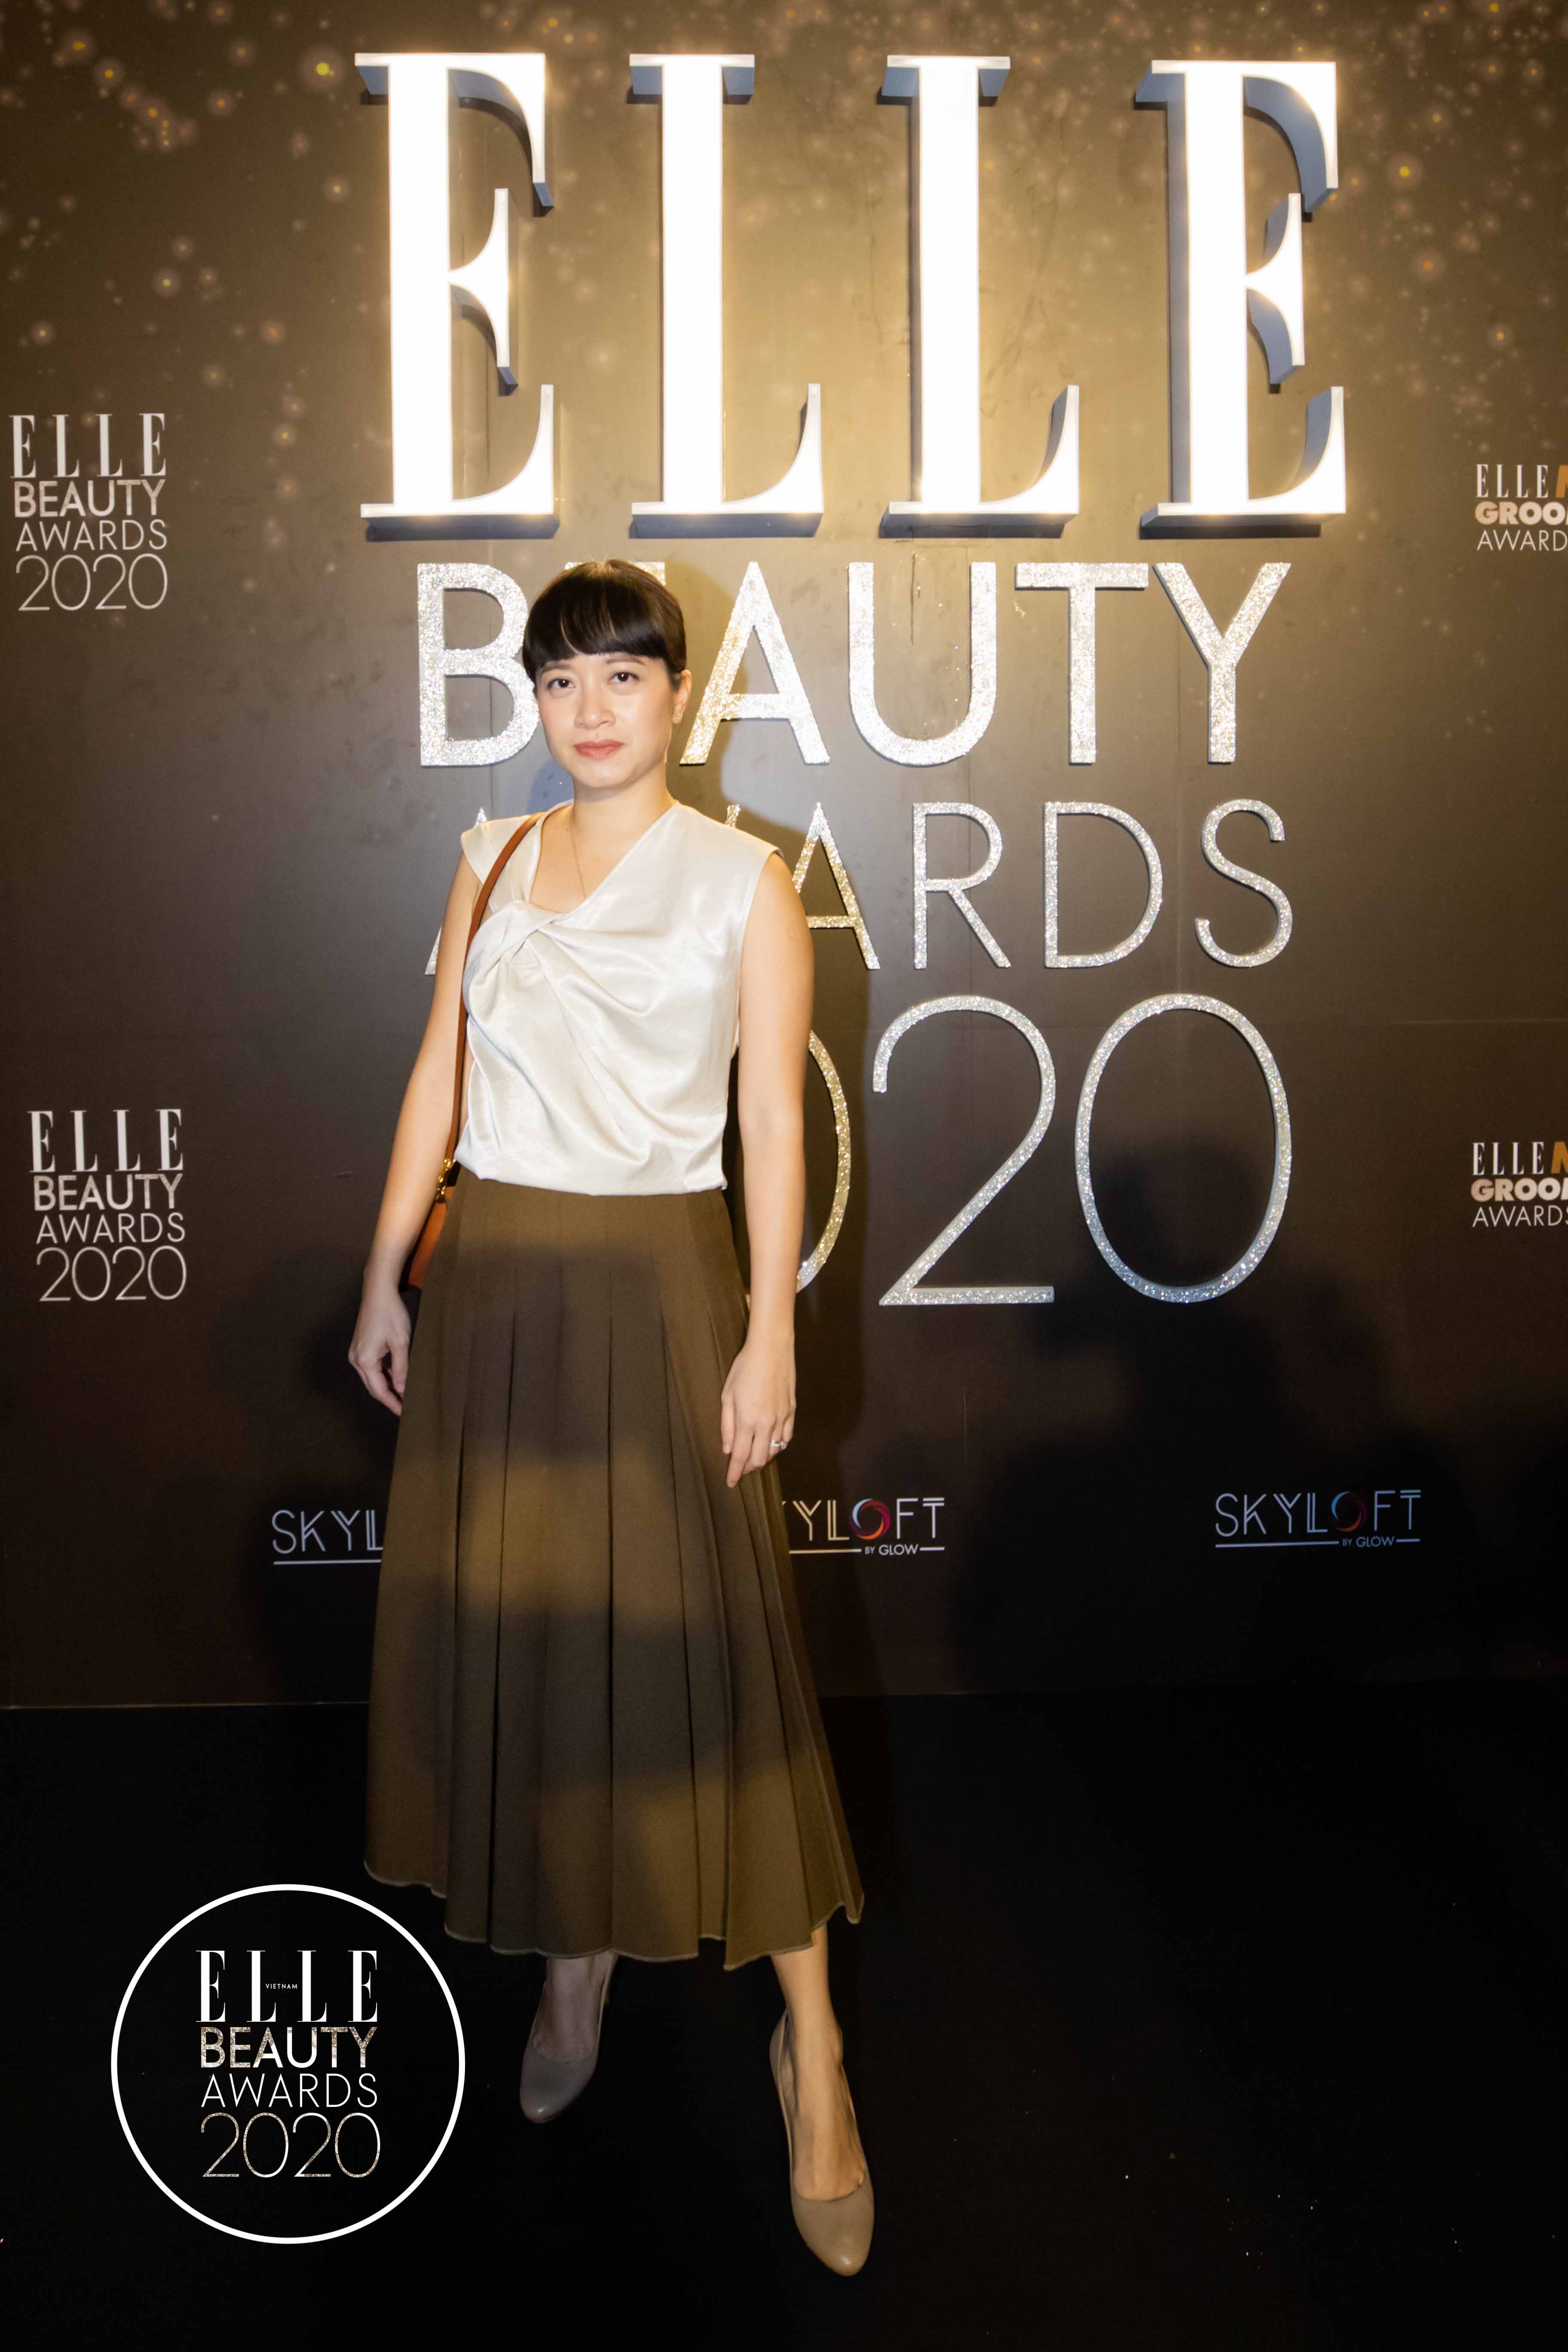 ELLE Beauty Awards 2020